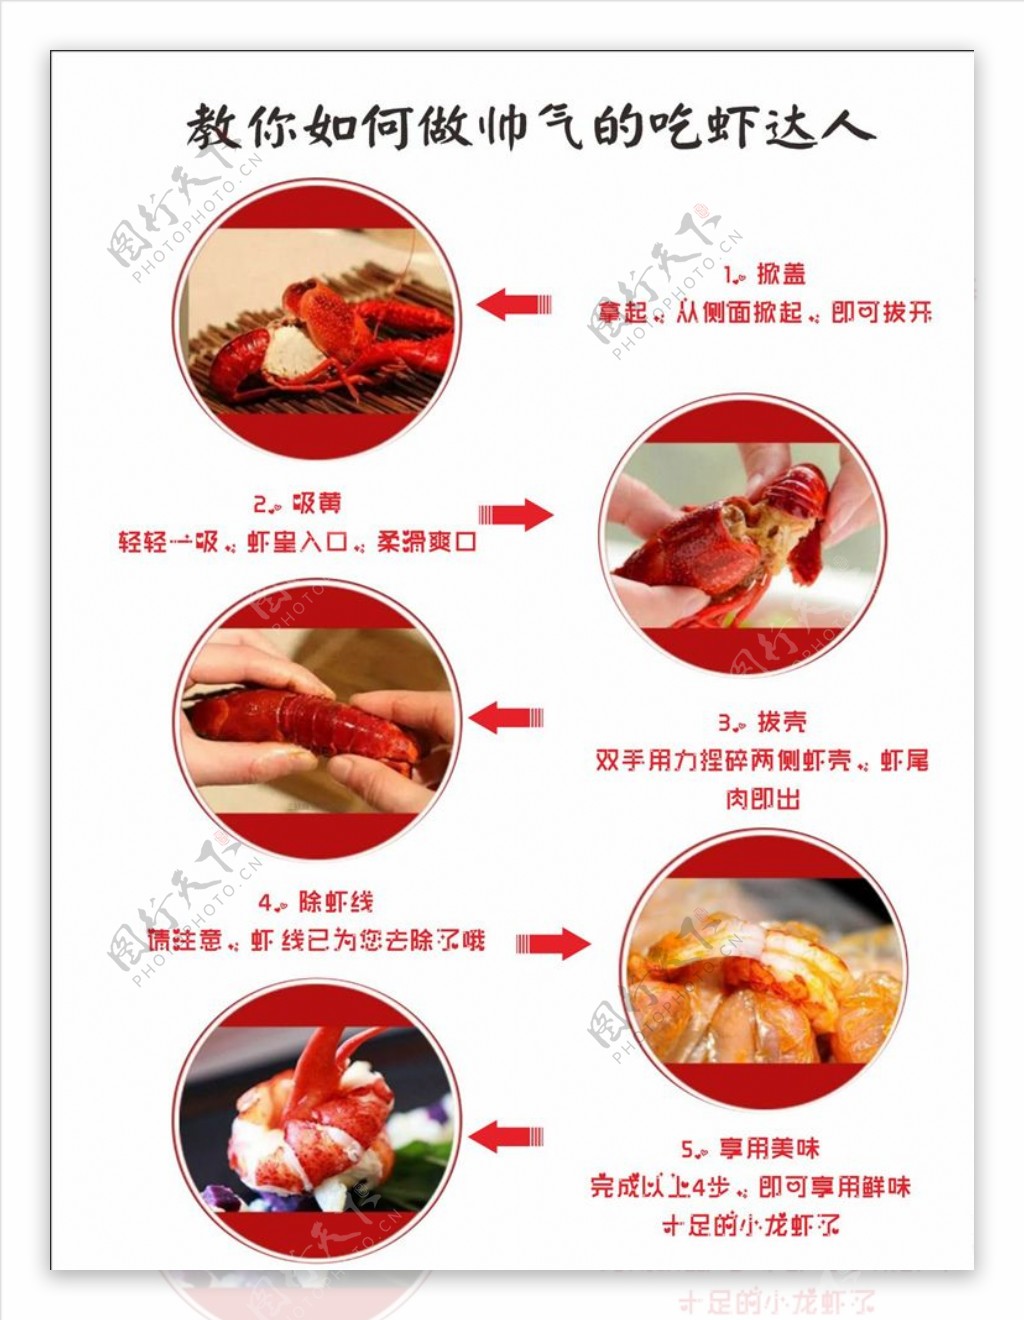 教你如何吃虾步骤海报模板